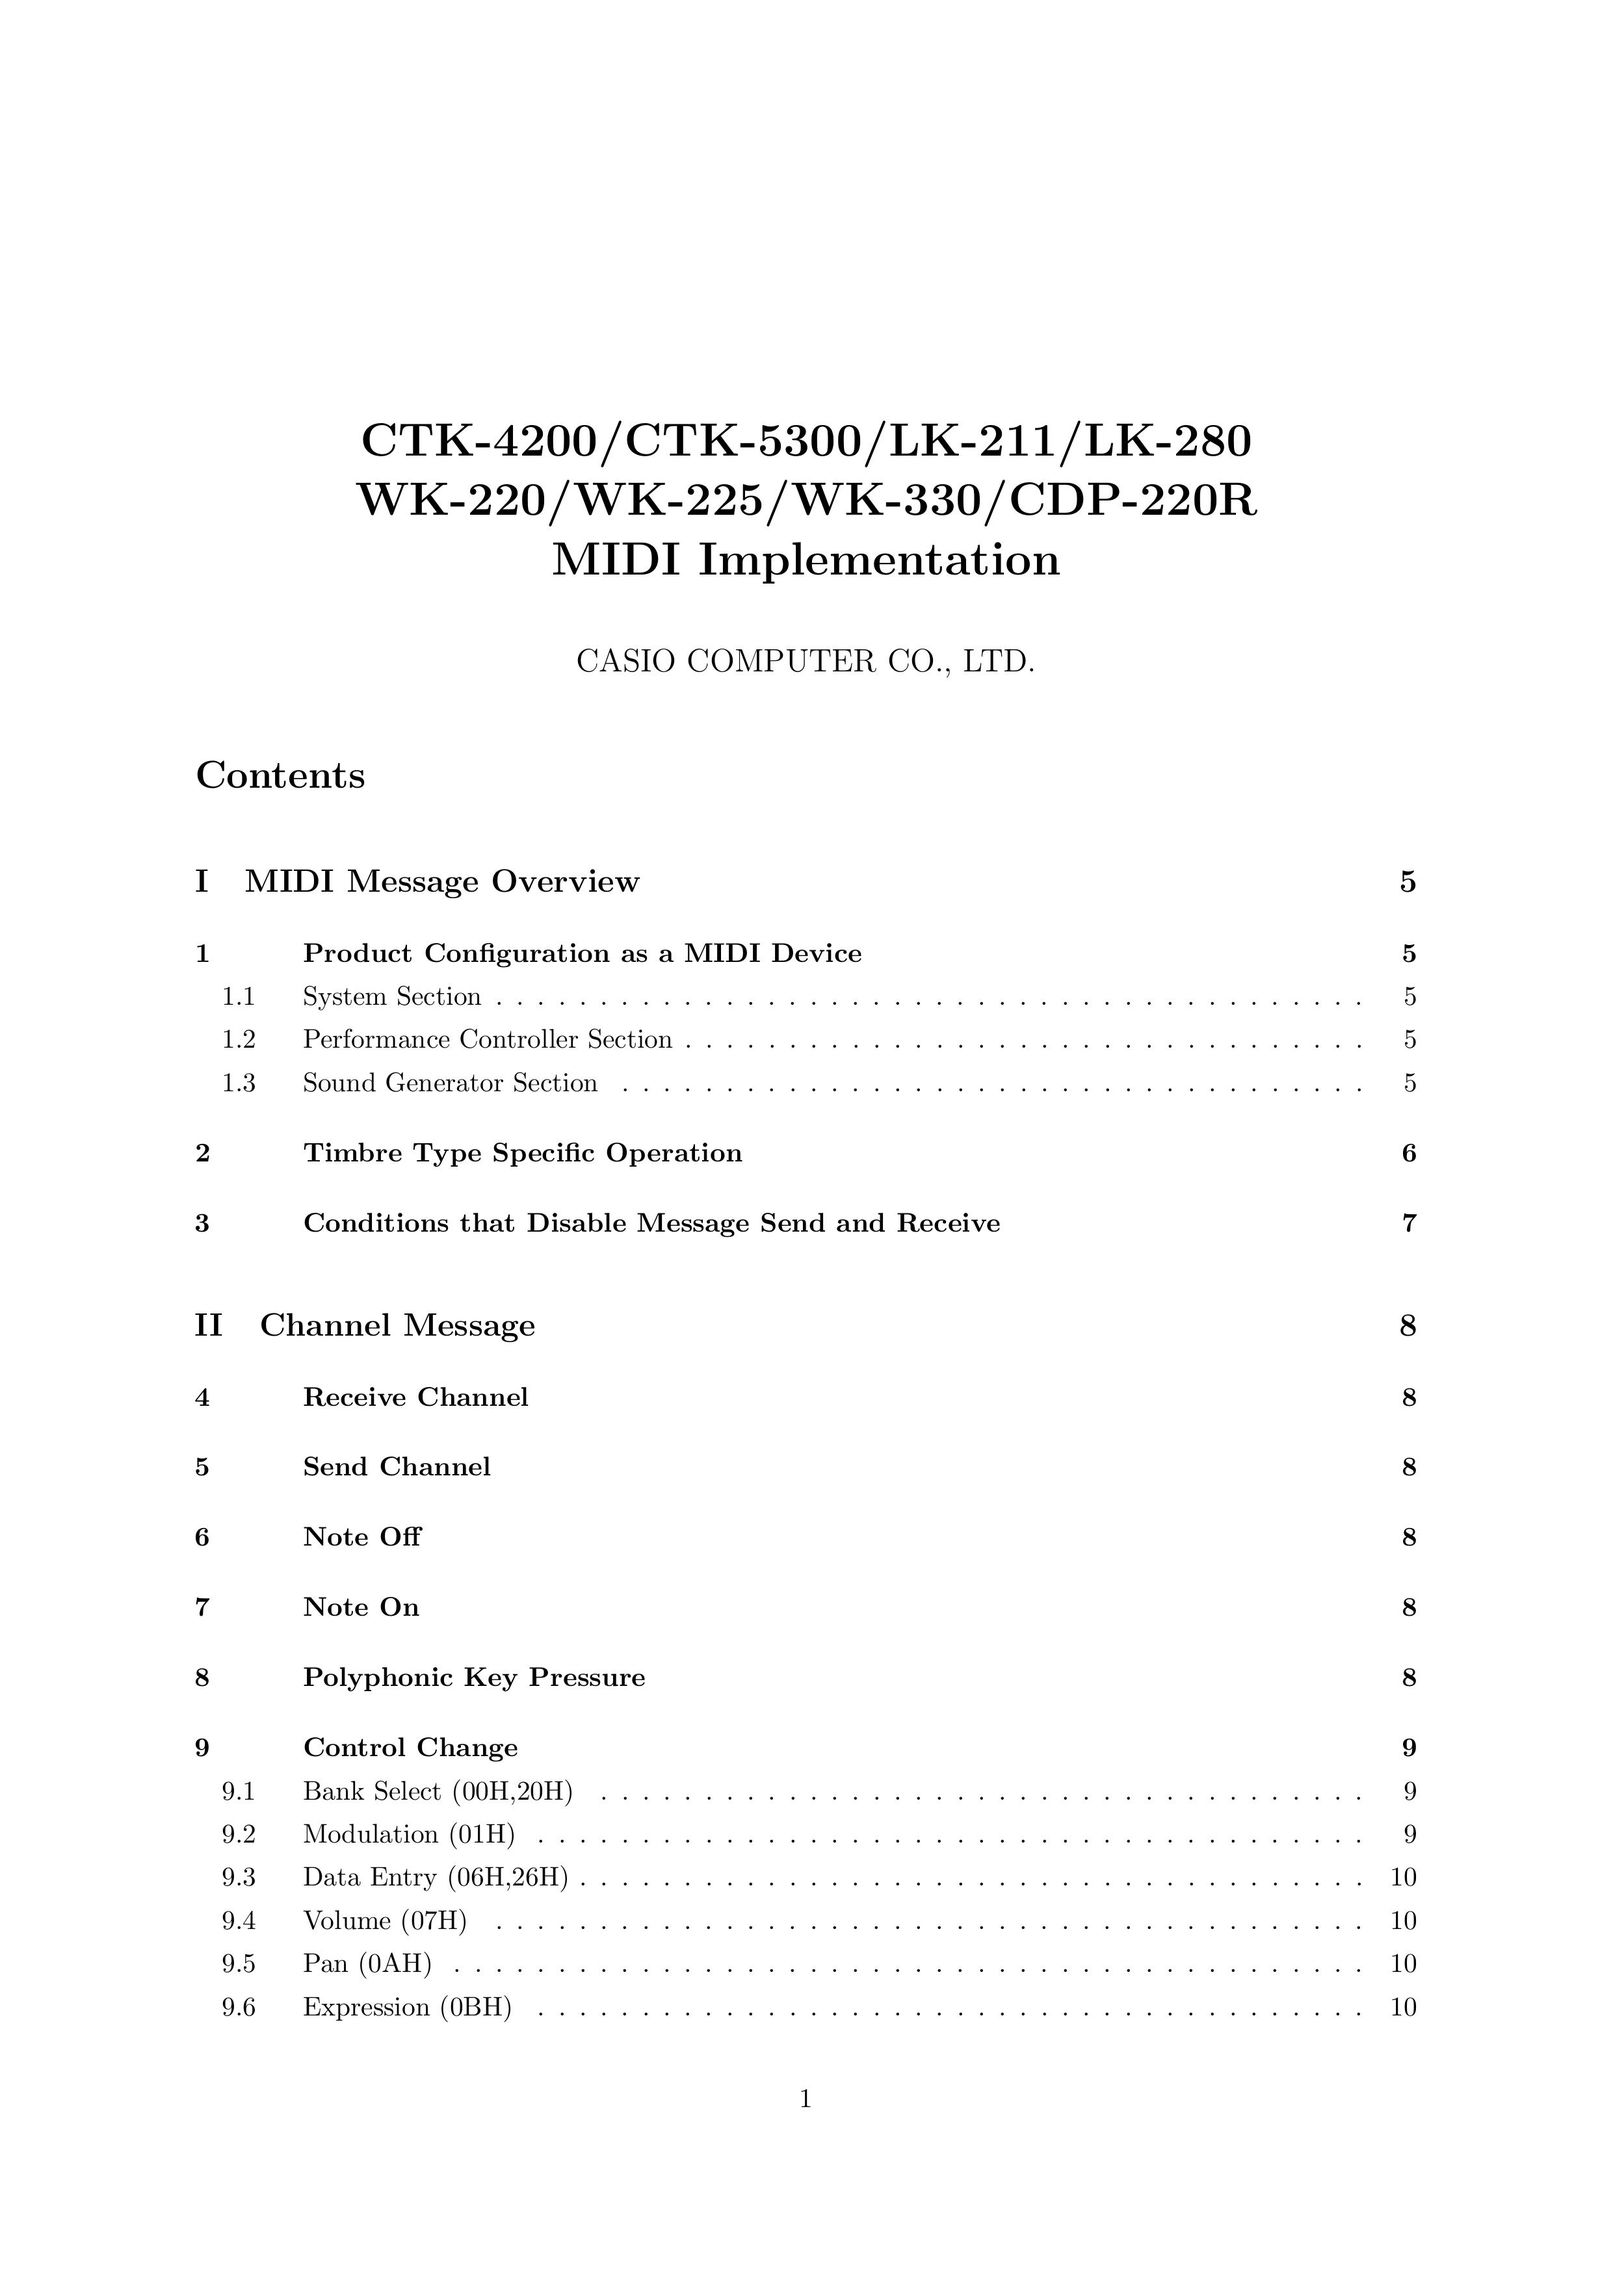 Casio CTK-4200 Computer Accessories User Manual